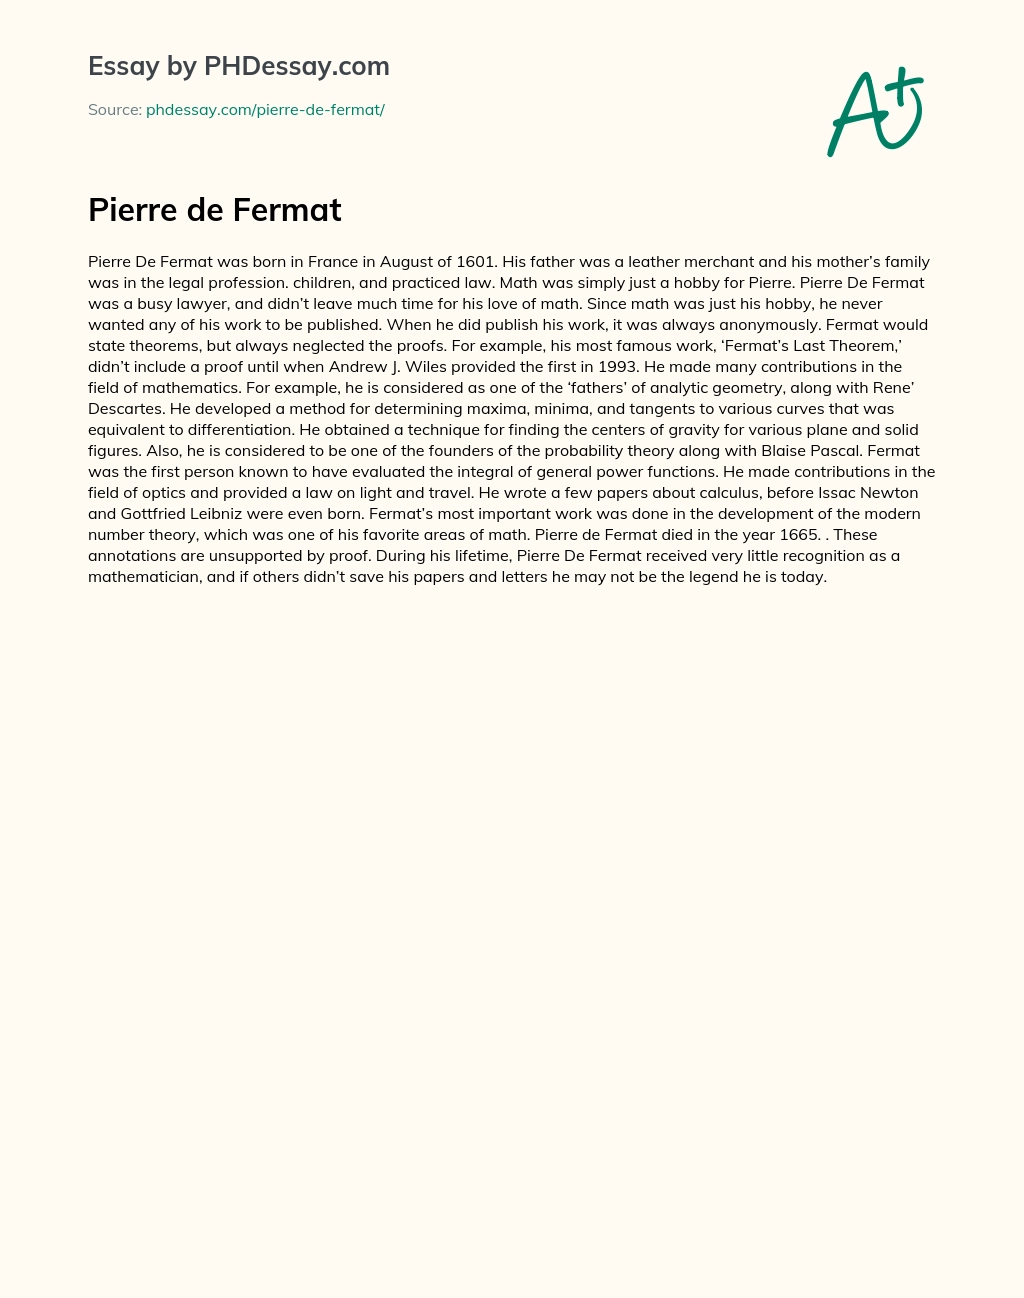 Pierre de Fermat essay